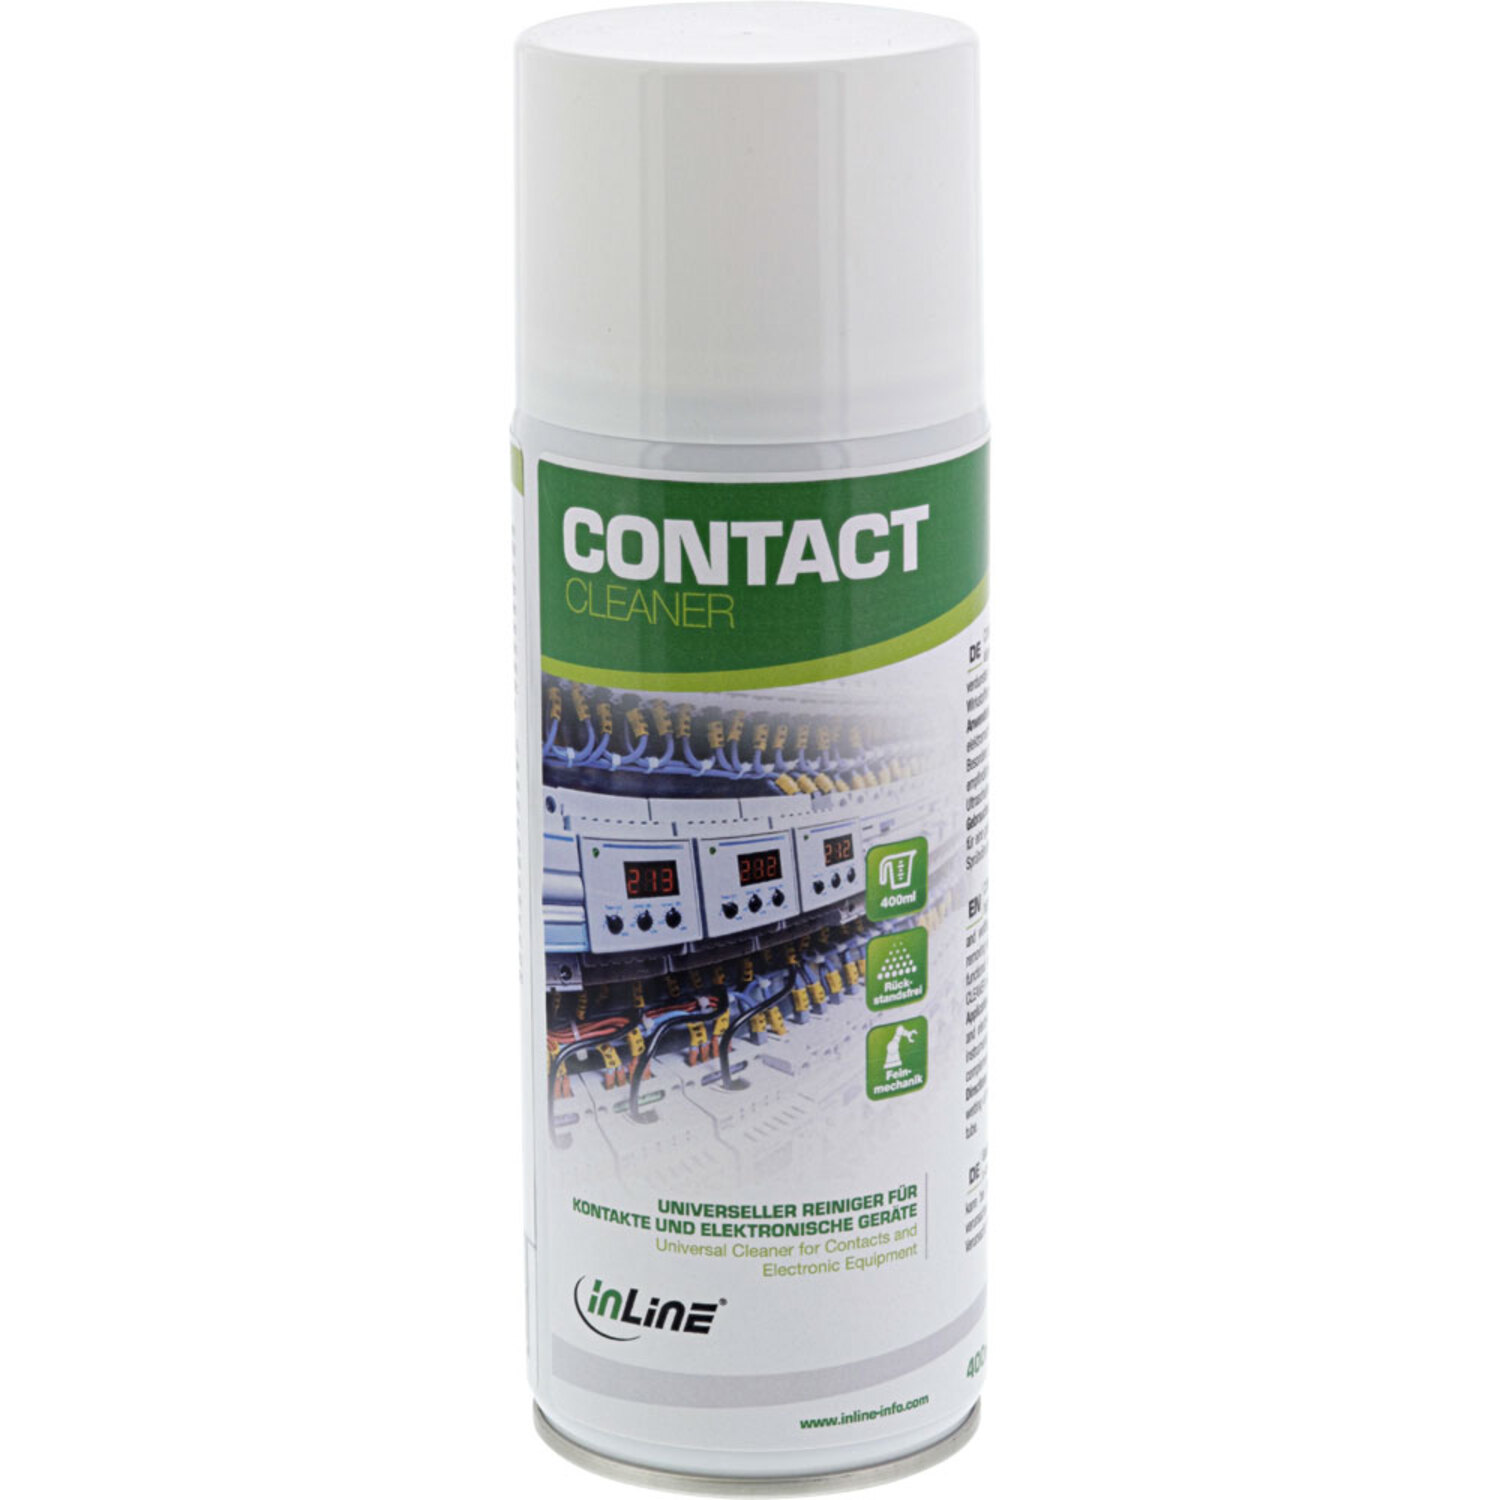 INLINE Reinigung und Kontakte InLine® Contact Cleaner, für universeller / Reiniger